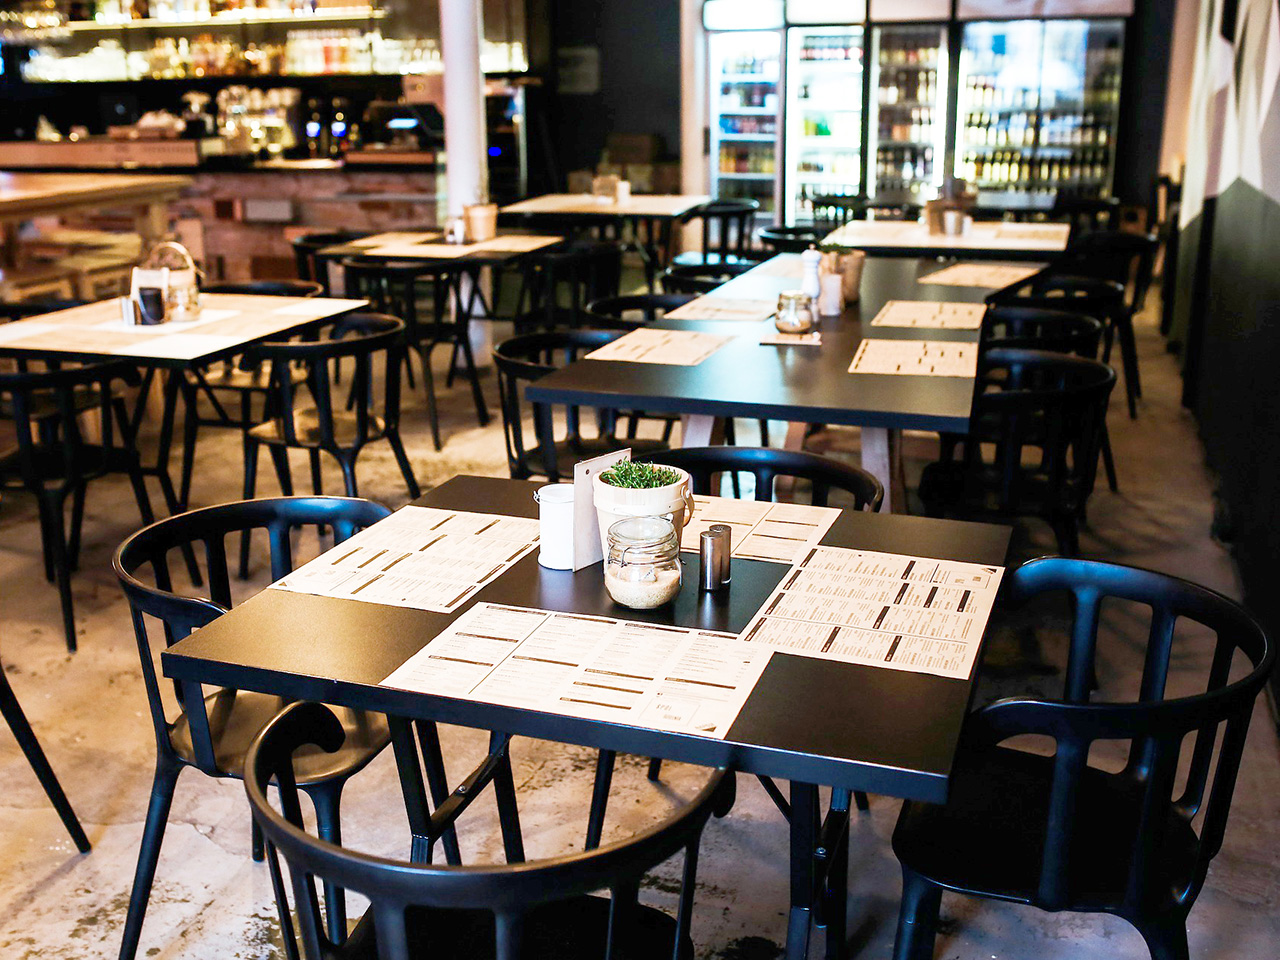 Restoran s crnim stolovima i stolicama. Na stolovima se nalaze jelovnici koji ujedno služe kao podmetači. 